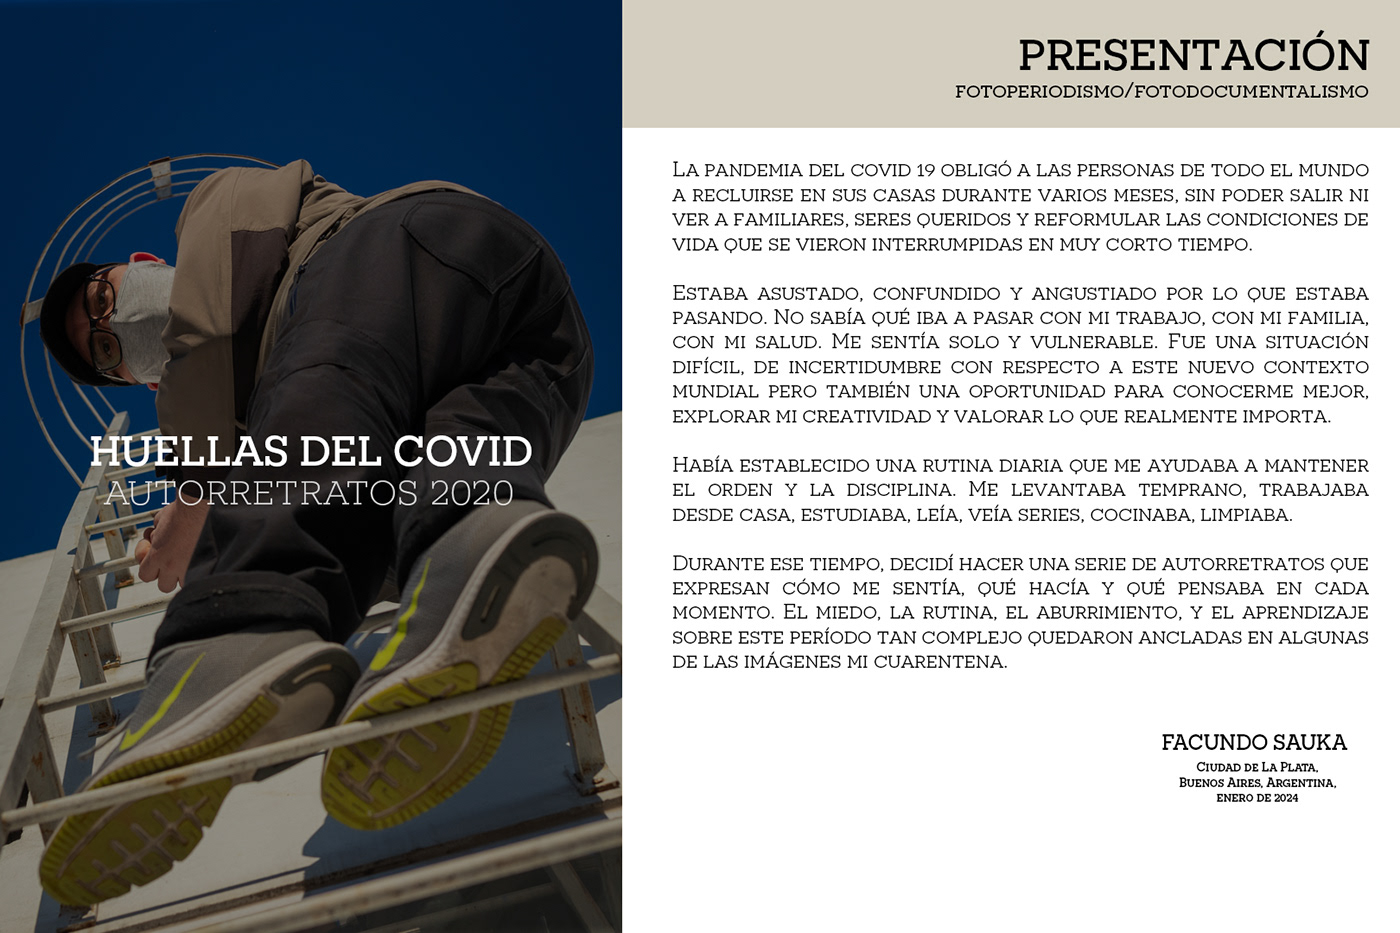 Covid 19 corona virus pandemia AUTORRETRATO Fotoperiodismo cuarentena fotoperiodismo argentino